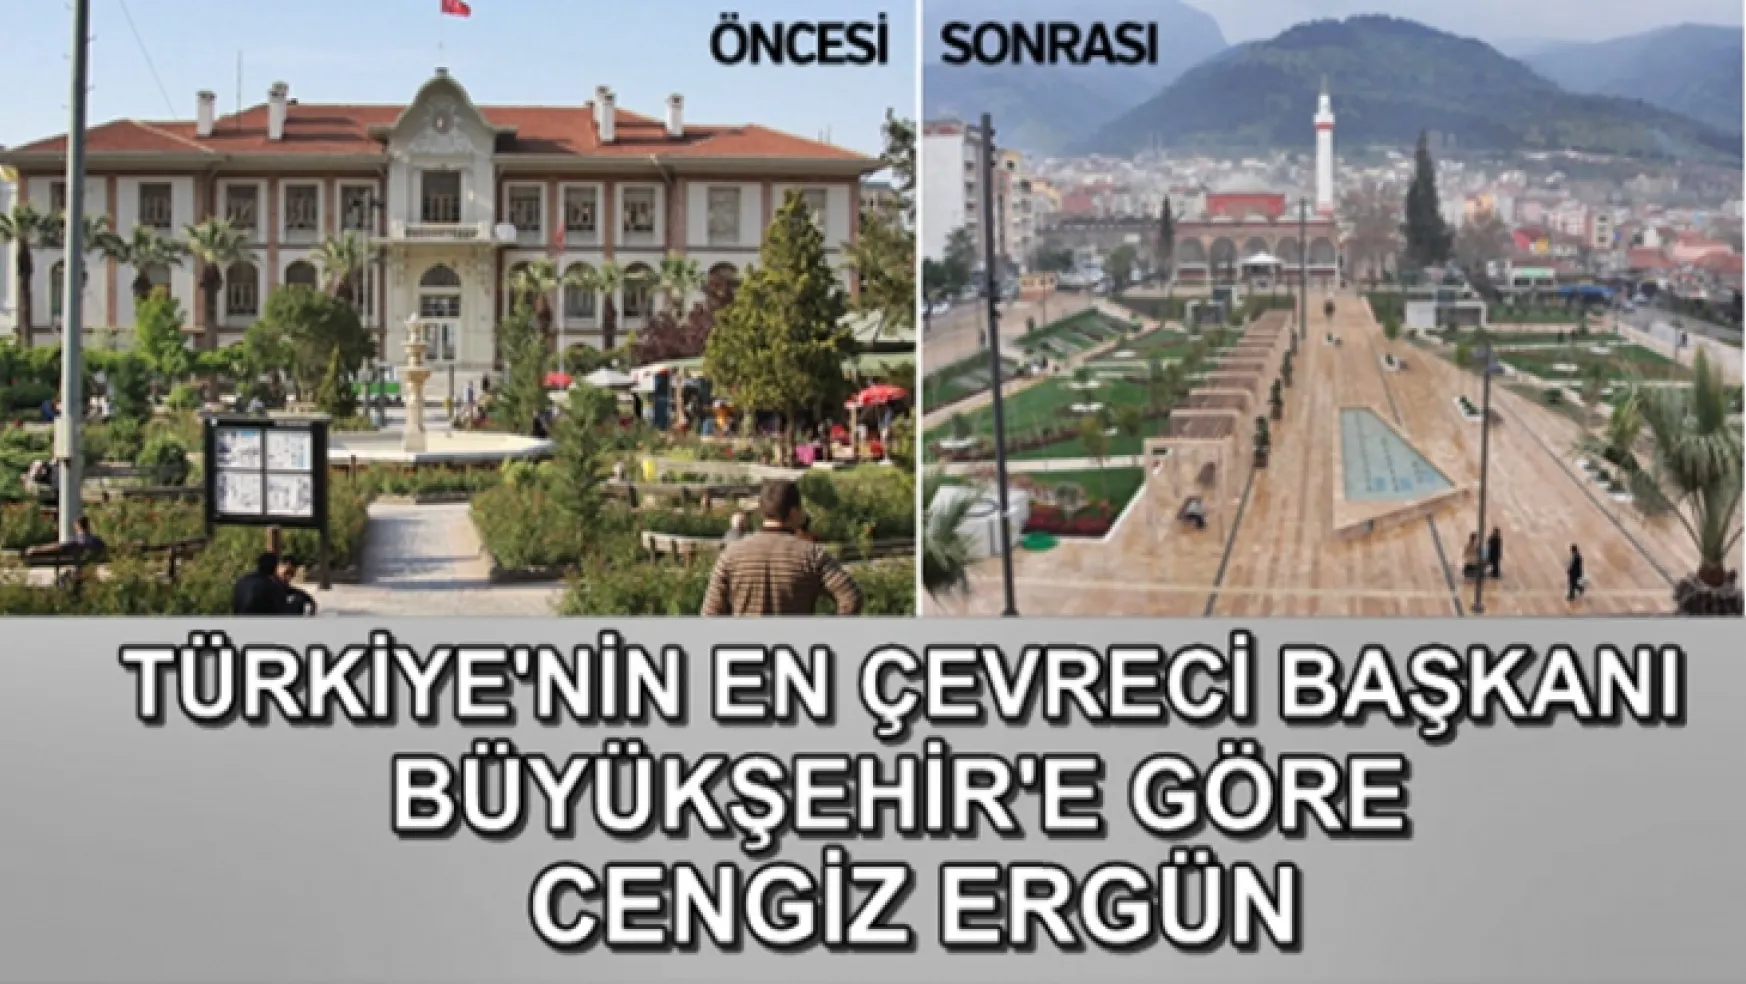 Manisa'nın yeşili gitti betonu geldi: Hala Büyükşehir en çevreci Başkan Cengiz Ergün diyor!...